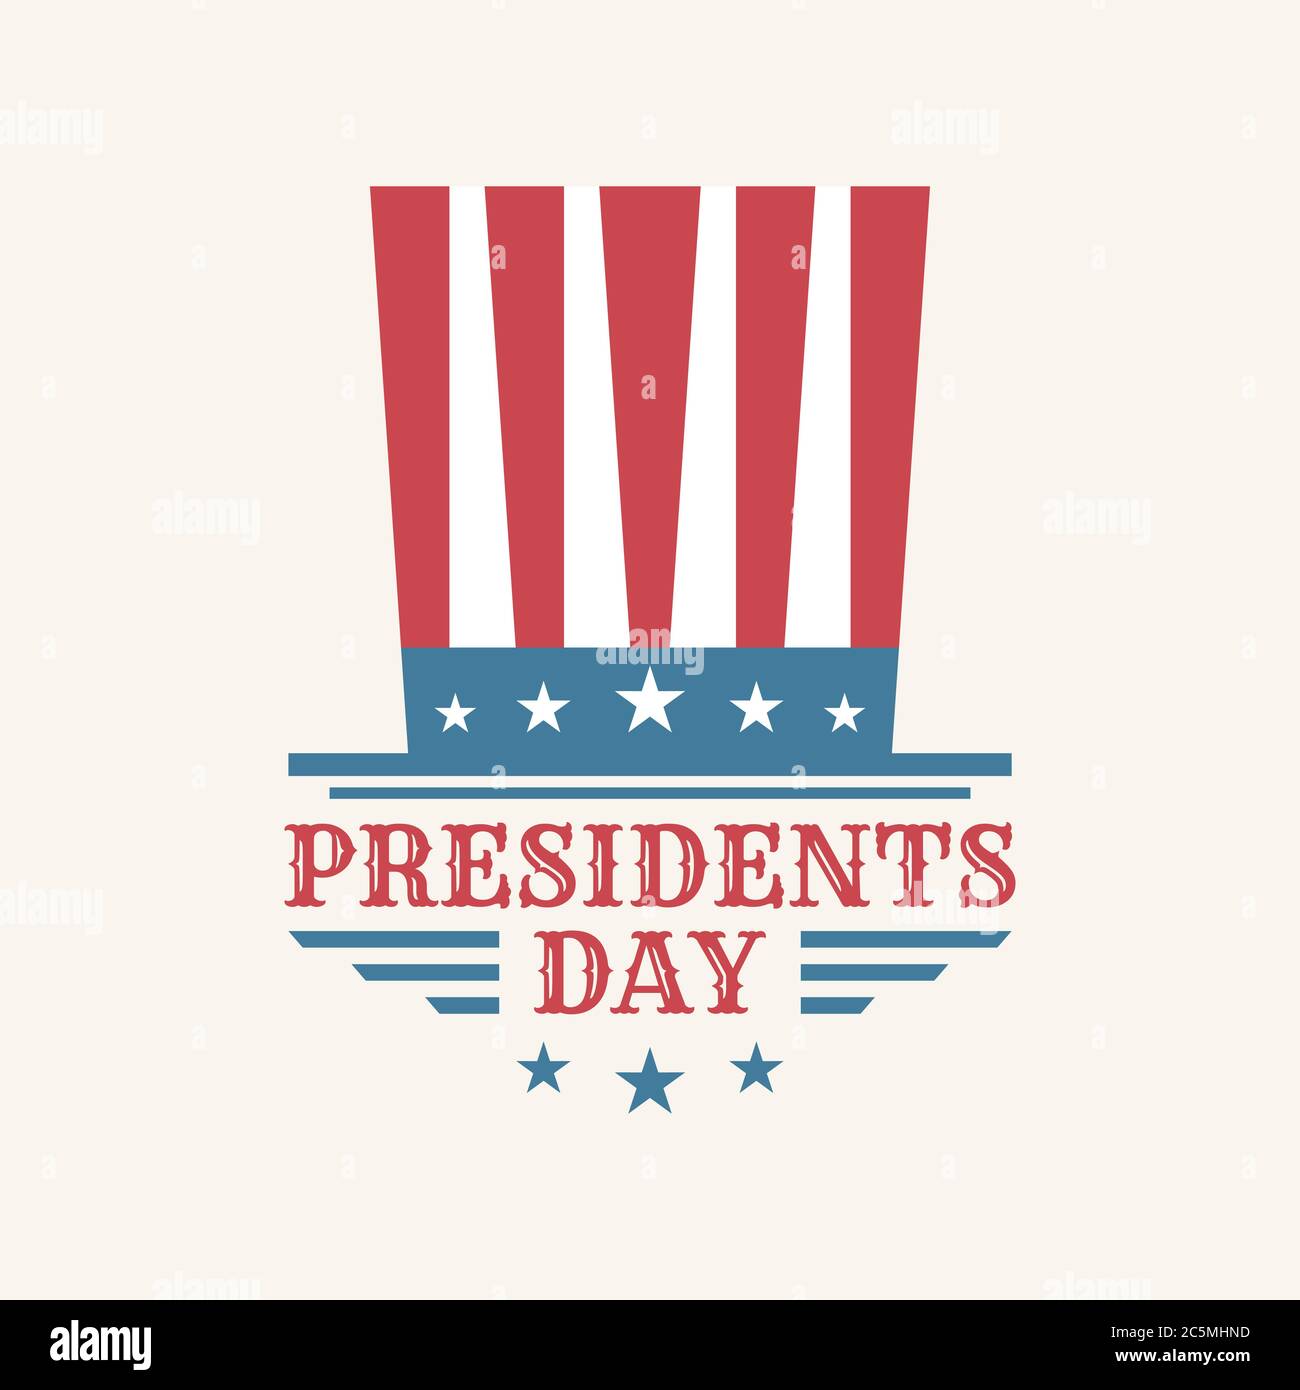 Texte vintage Presidents Day avec drapeau américain. Illustration vectorielle texte dessiné à la main pour la journée des présidents aux États-Unis. Illustration vectorielle EPS Illustration de Vecteur